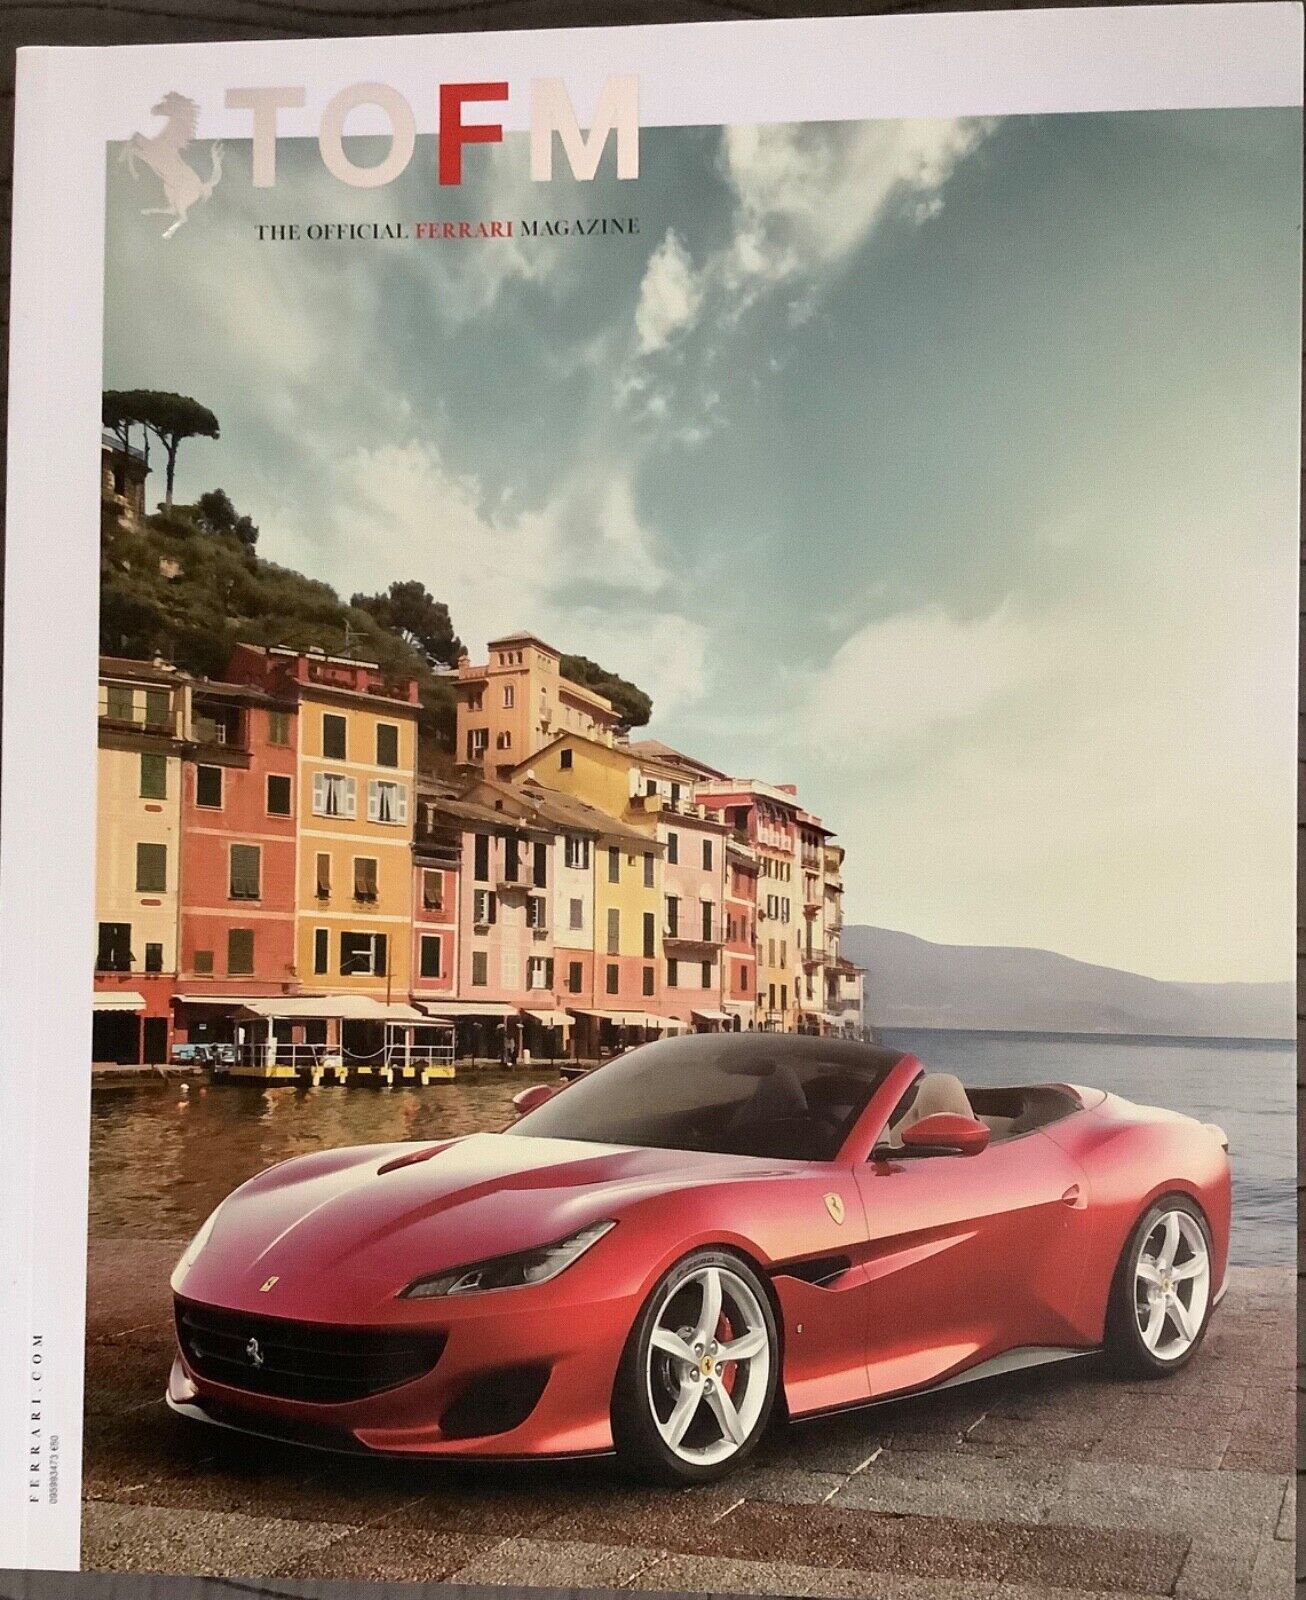 The Official Ferrari Magazine #36, TOFM, September 2017